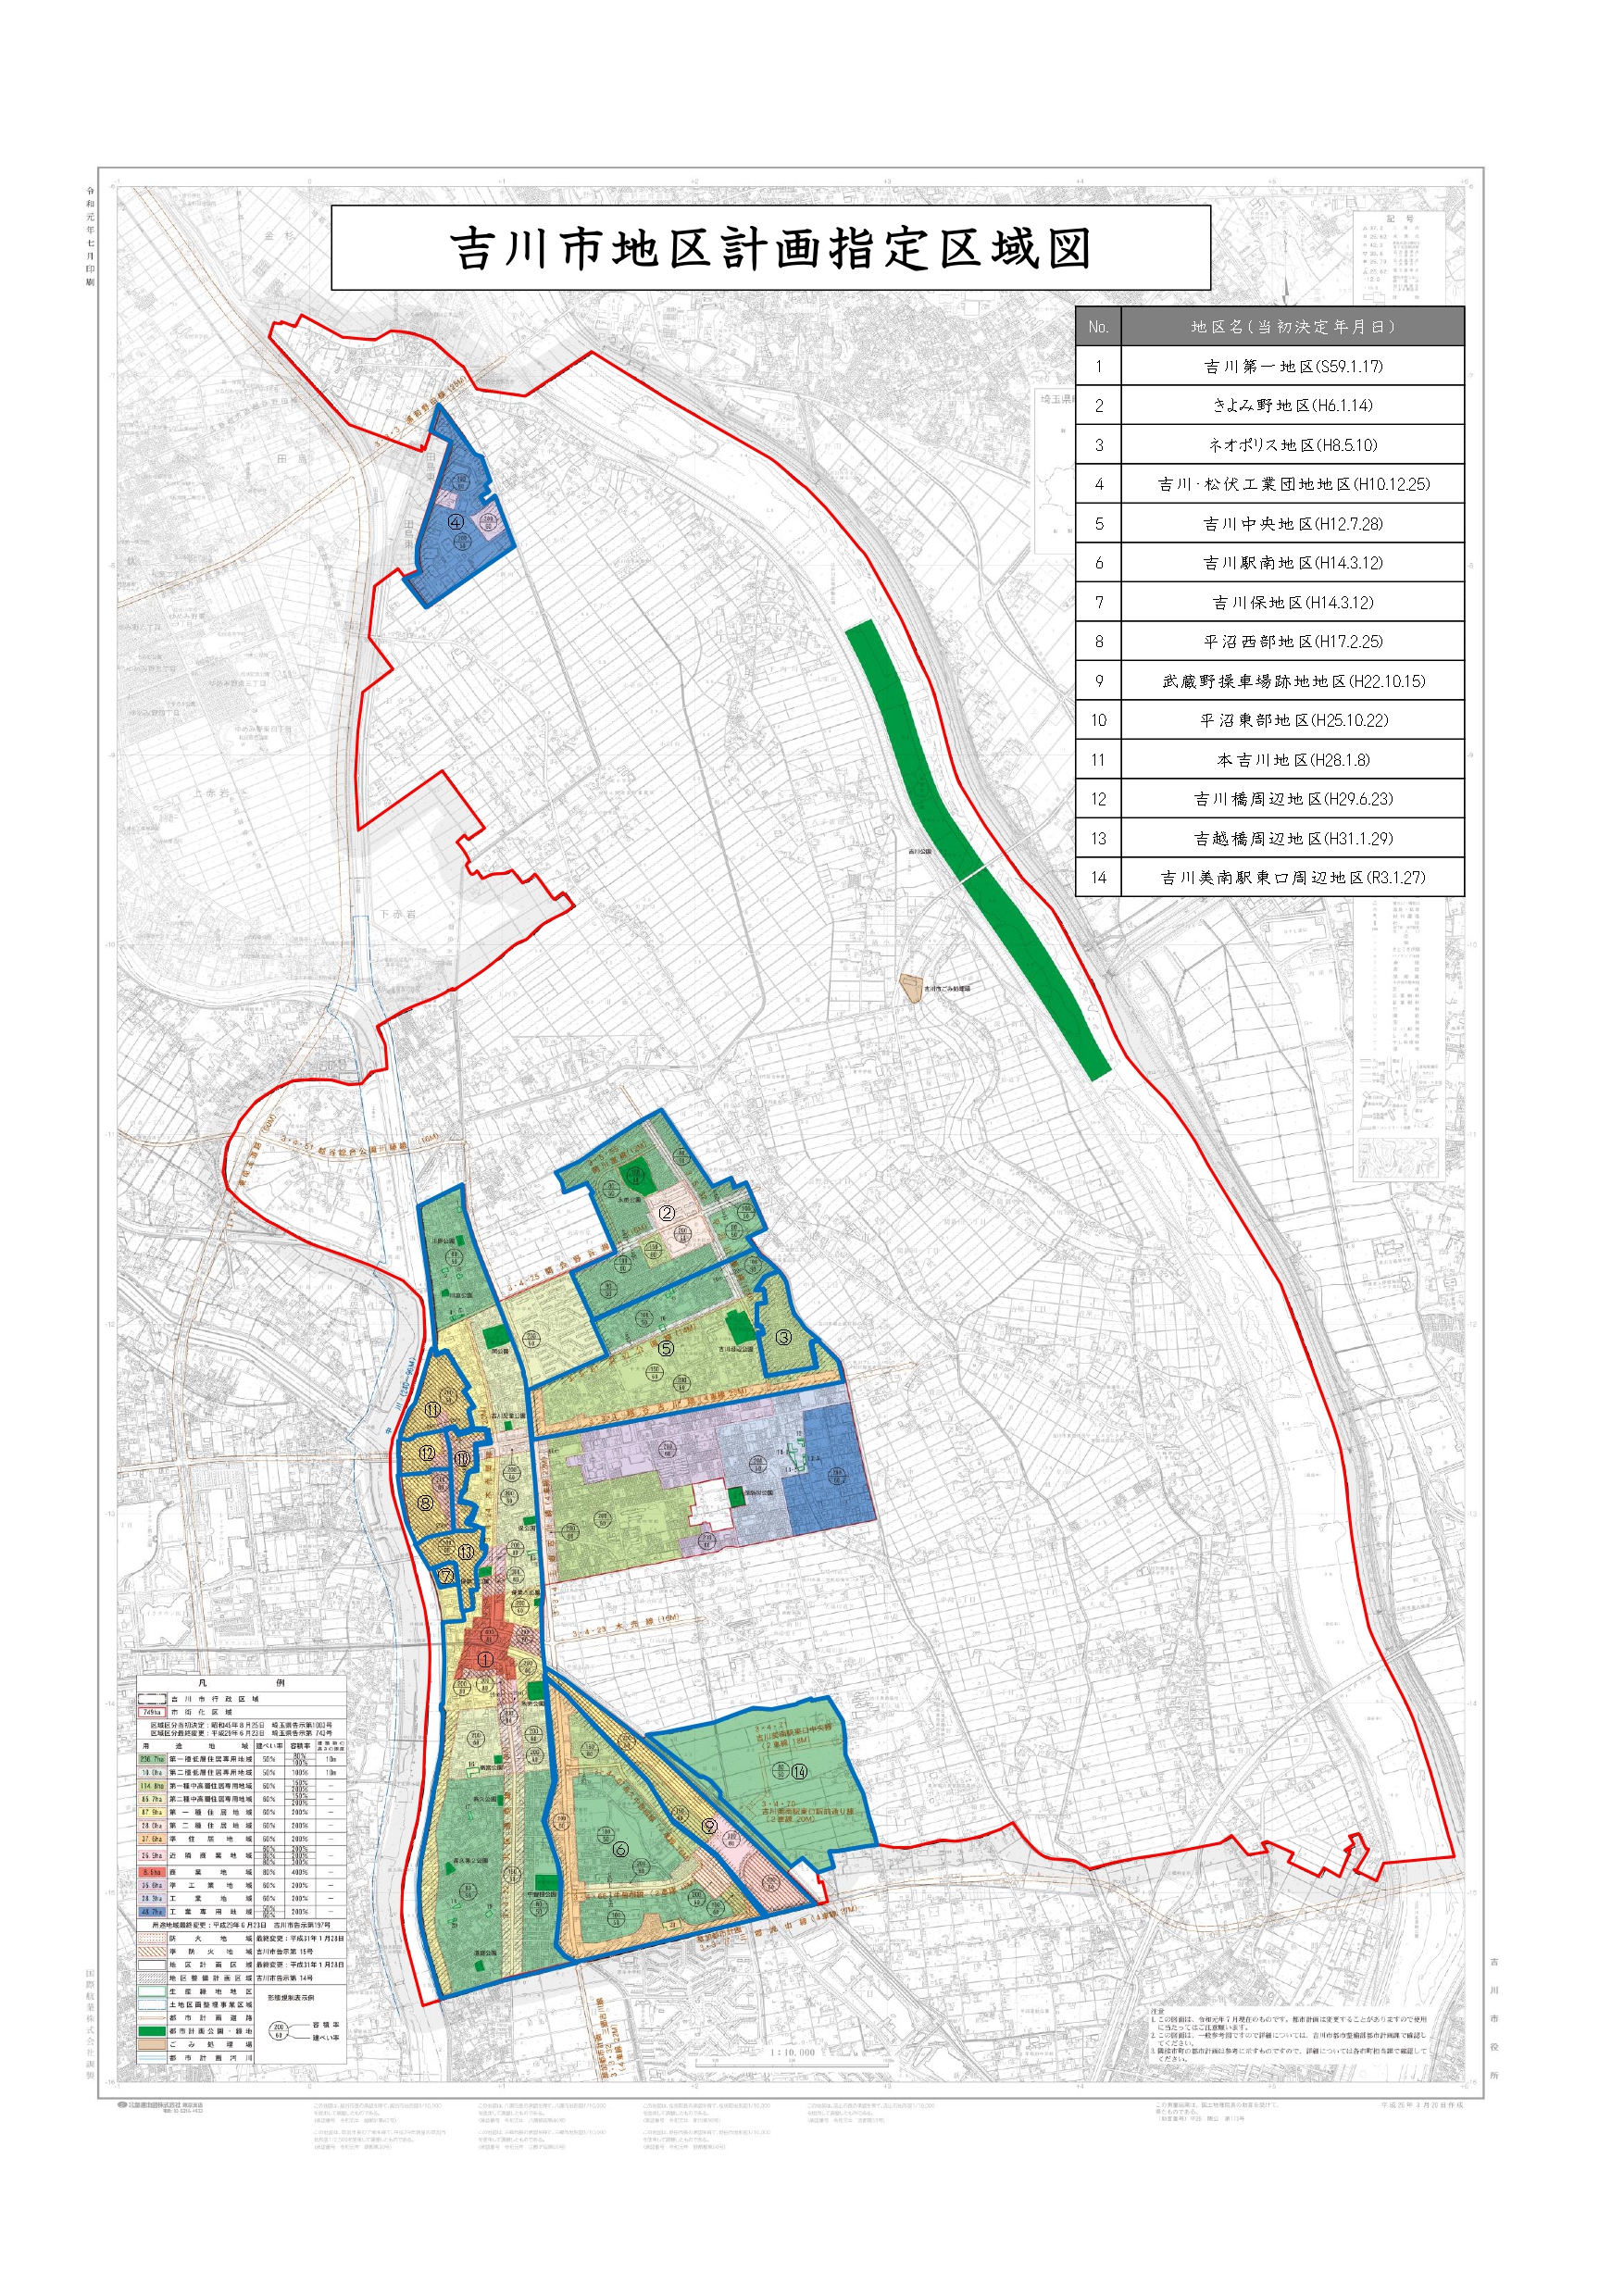 吉川市地区計画指定区域図